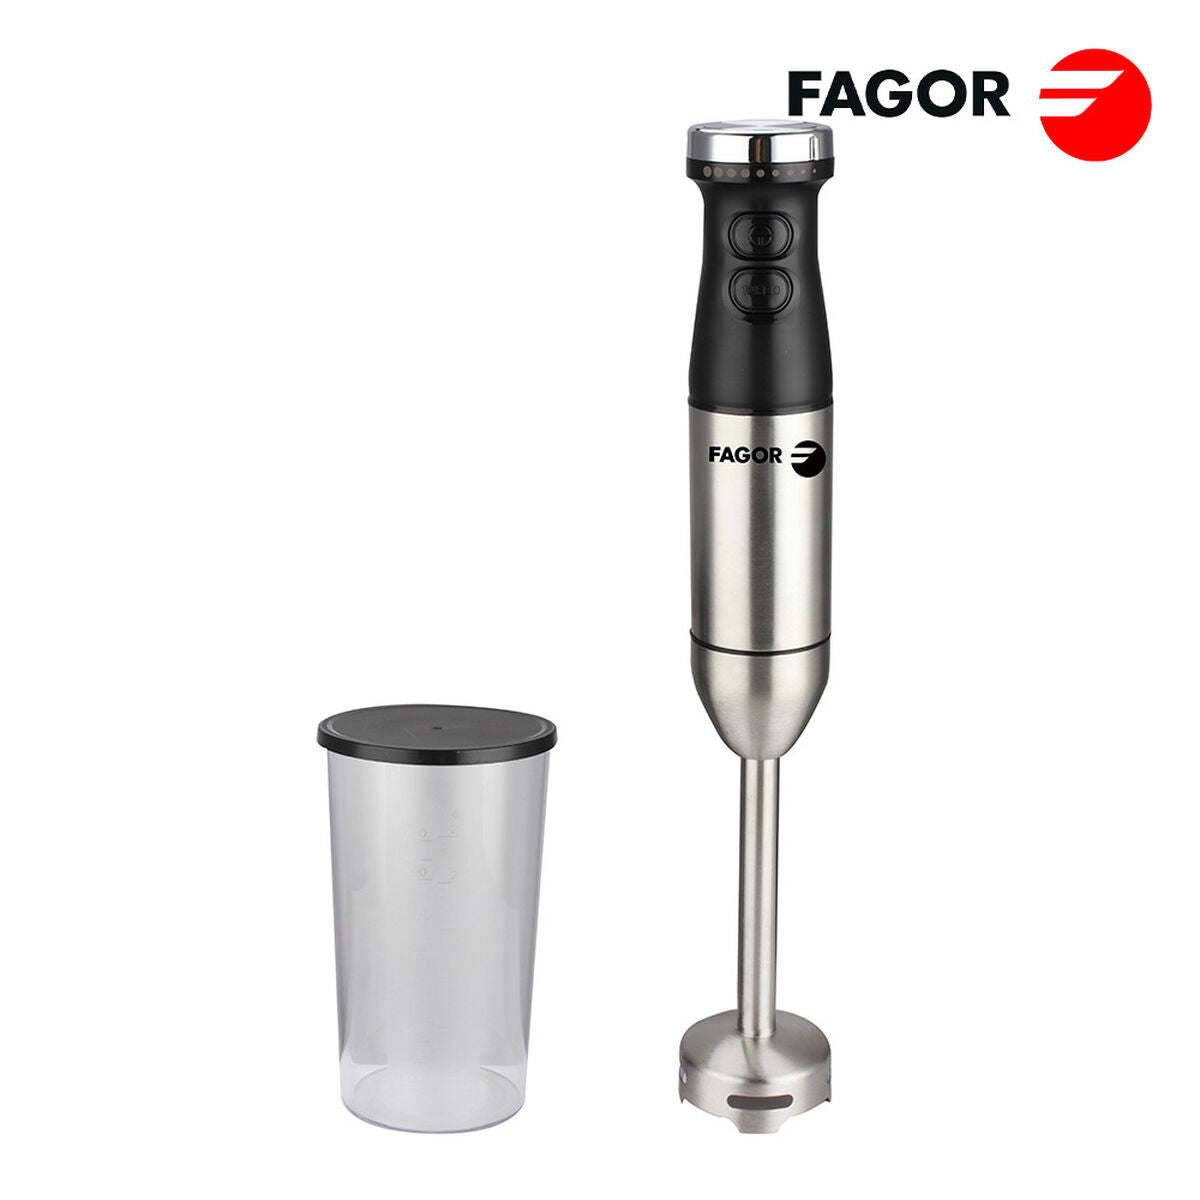 Handrührgerät FAGOR Silberfarben 800 W